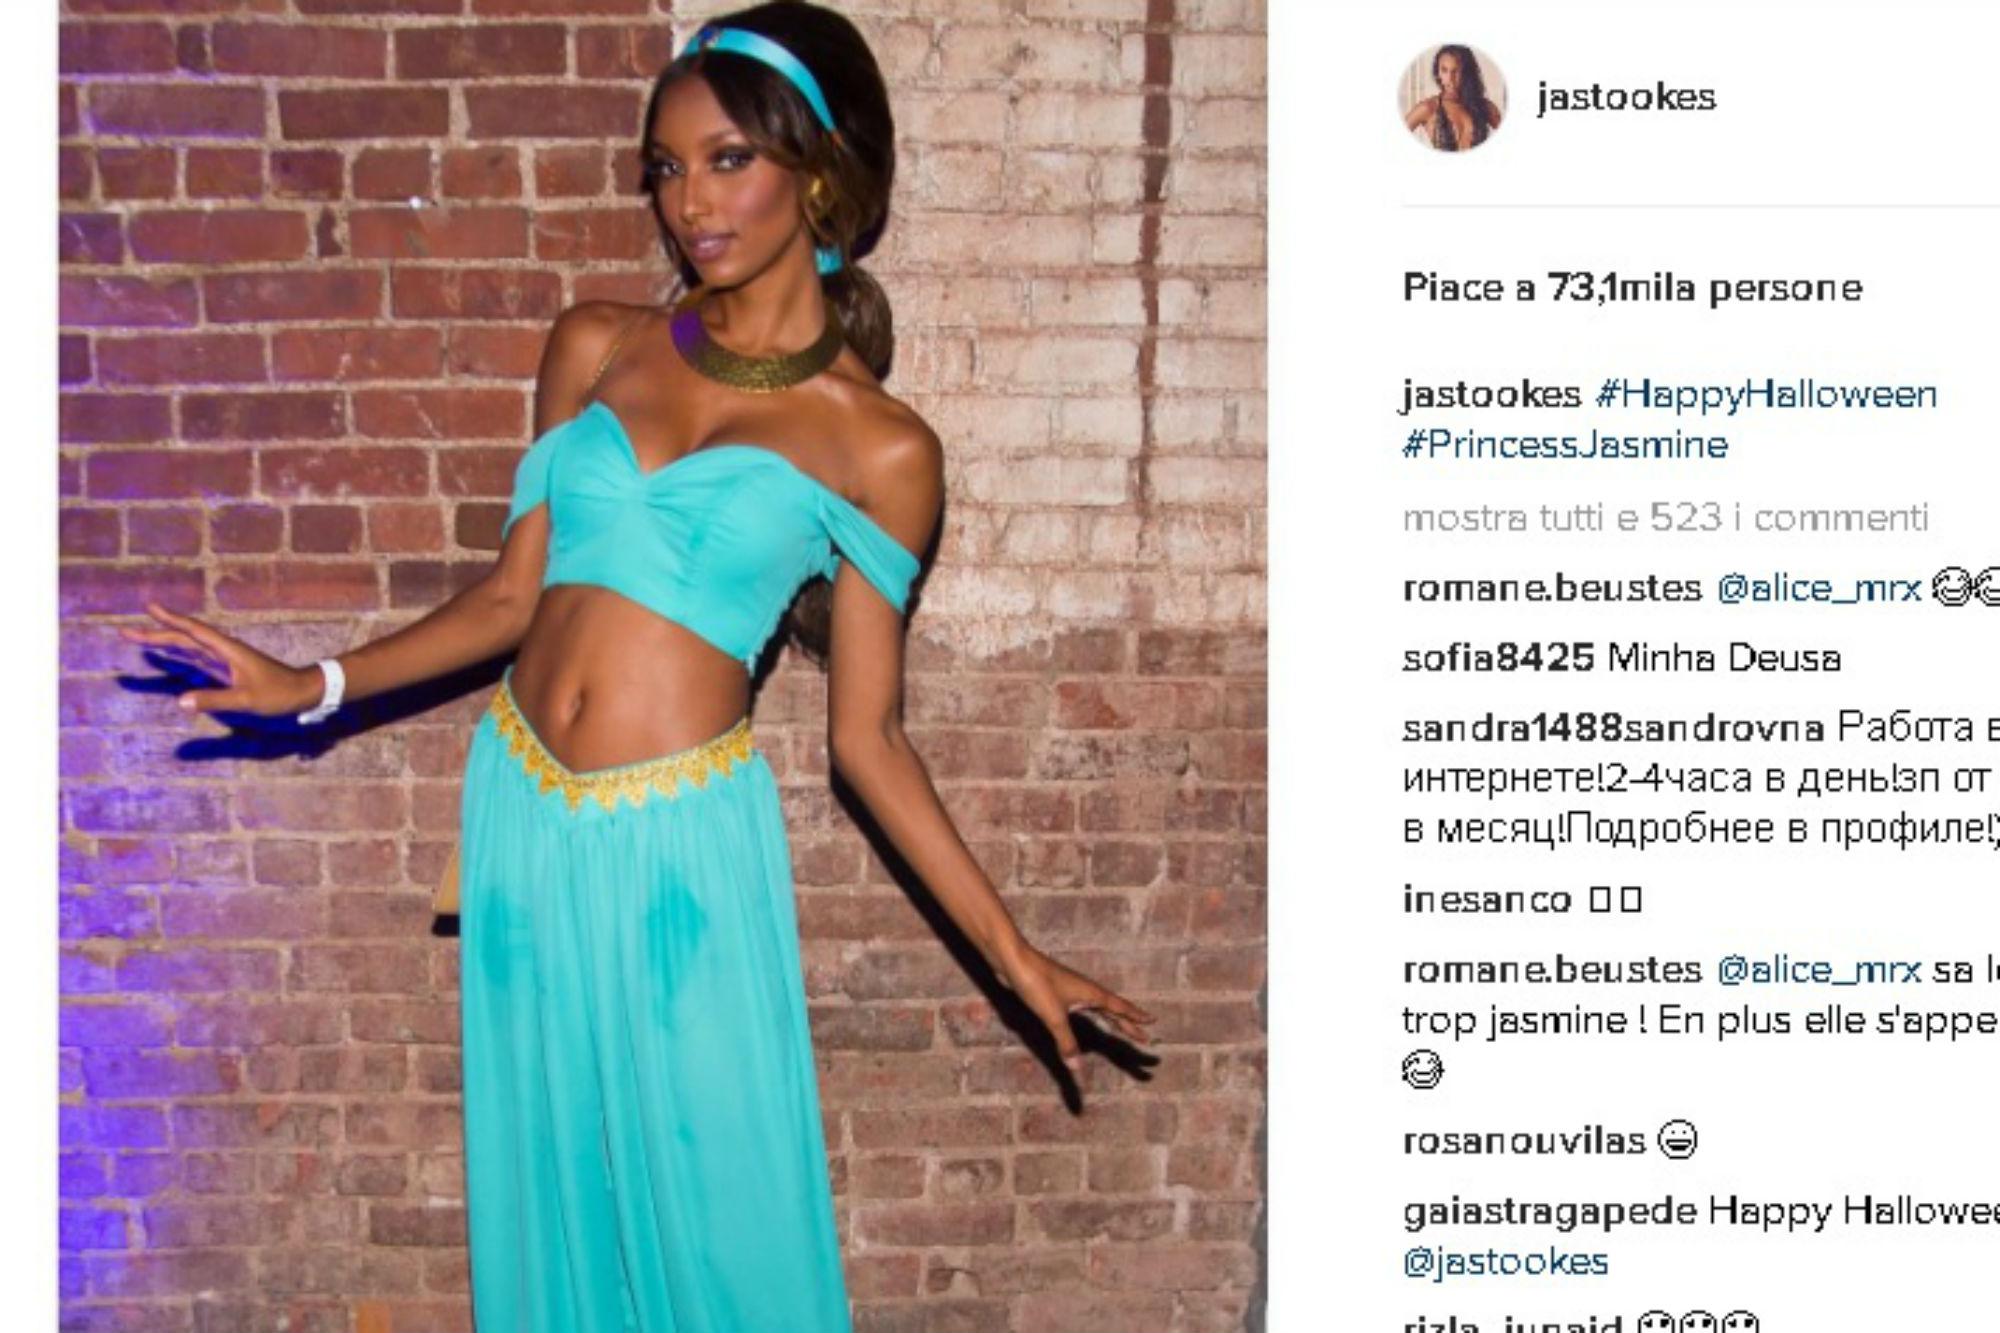 Tiara e completo azzurro, Jasmine Tookes, sexy angelo di Victoria's Secret si ispira al mondo dei cartoon Disney, calandosi nei panni della principessa Jasmine di 'Alladin'